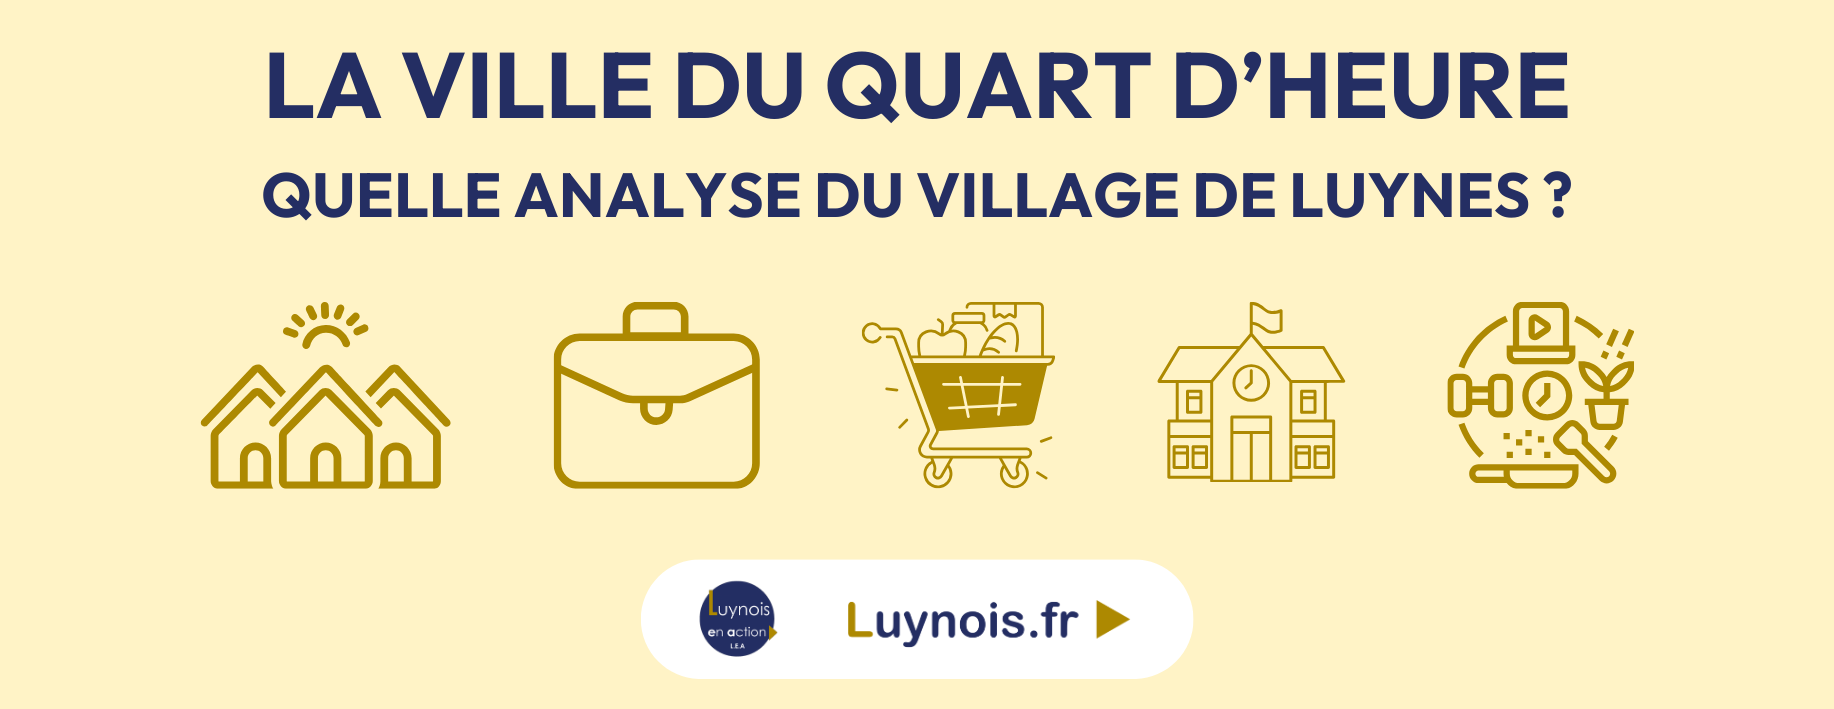 [DOSSIER] “Ville du quart d’heure” : quelle est l’analyse du village de Luynes ?